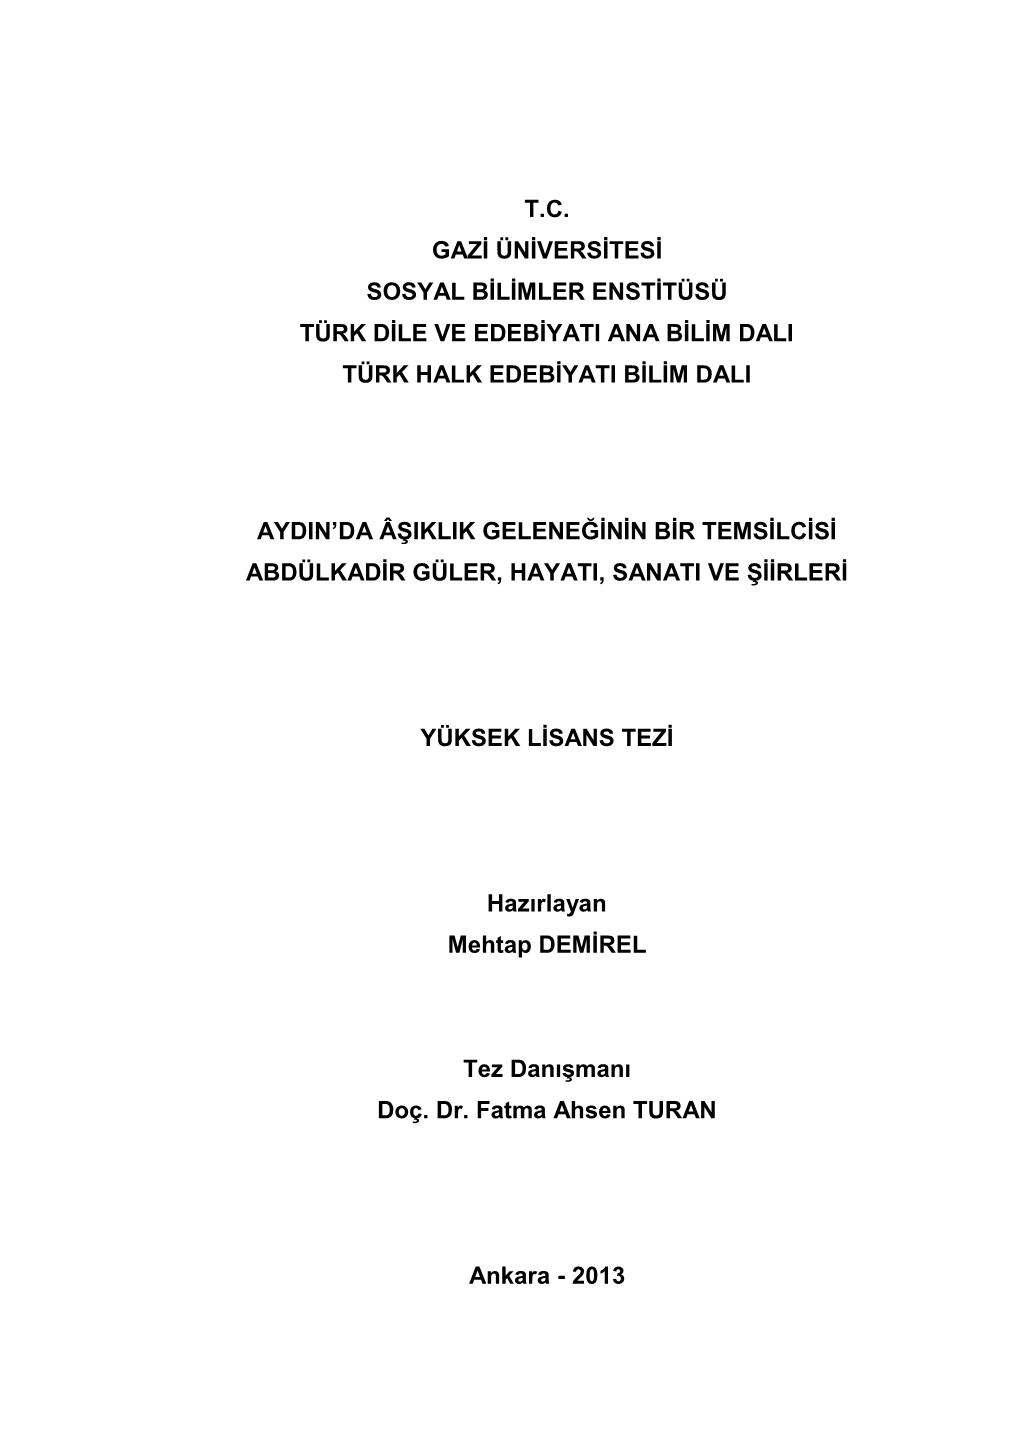 T.C. Gazi Üniversitesi Sosyal Bilimler Enstitüsü Türk Dile Ve Edebiyati Ana Bilim Dali Türk Halk Edebiyati Bilim Dali